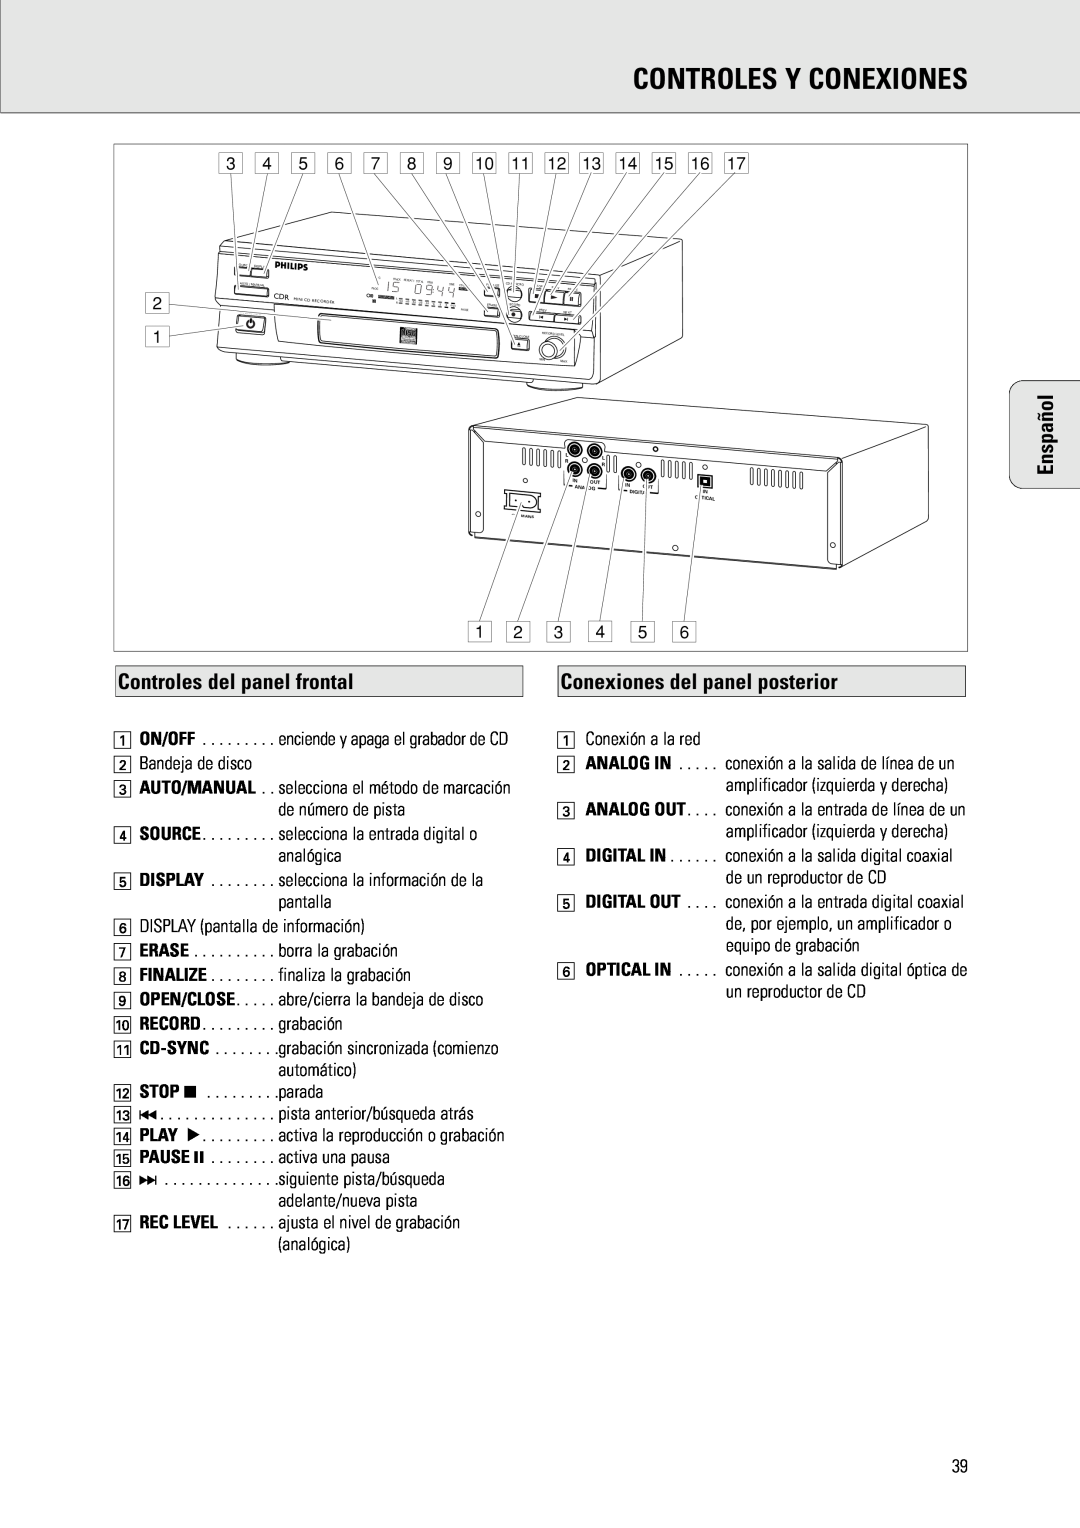 Philips CDR 538, CDR 560 Controles Y Conexiones, Controles del panel frontal, Conexiones del panel posterior, Enspañol 